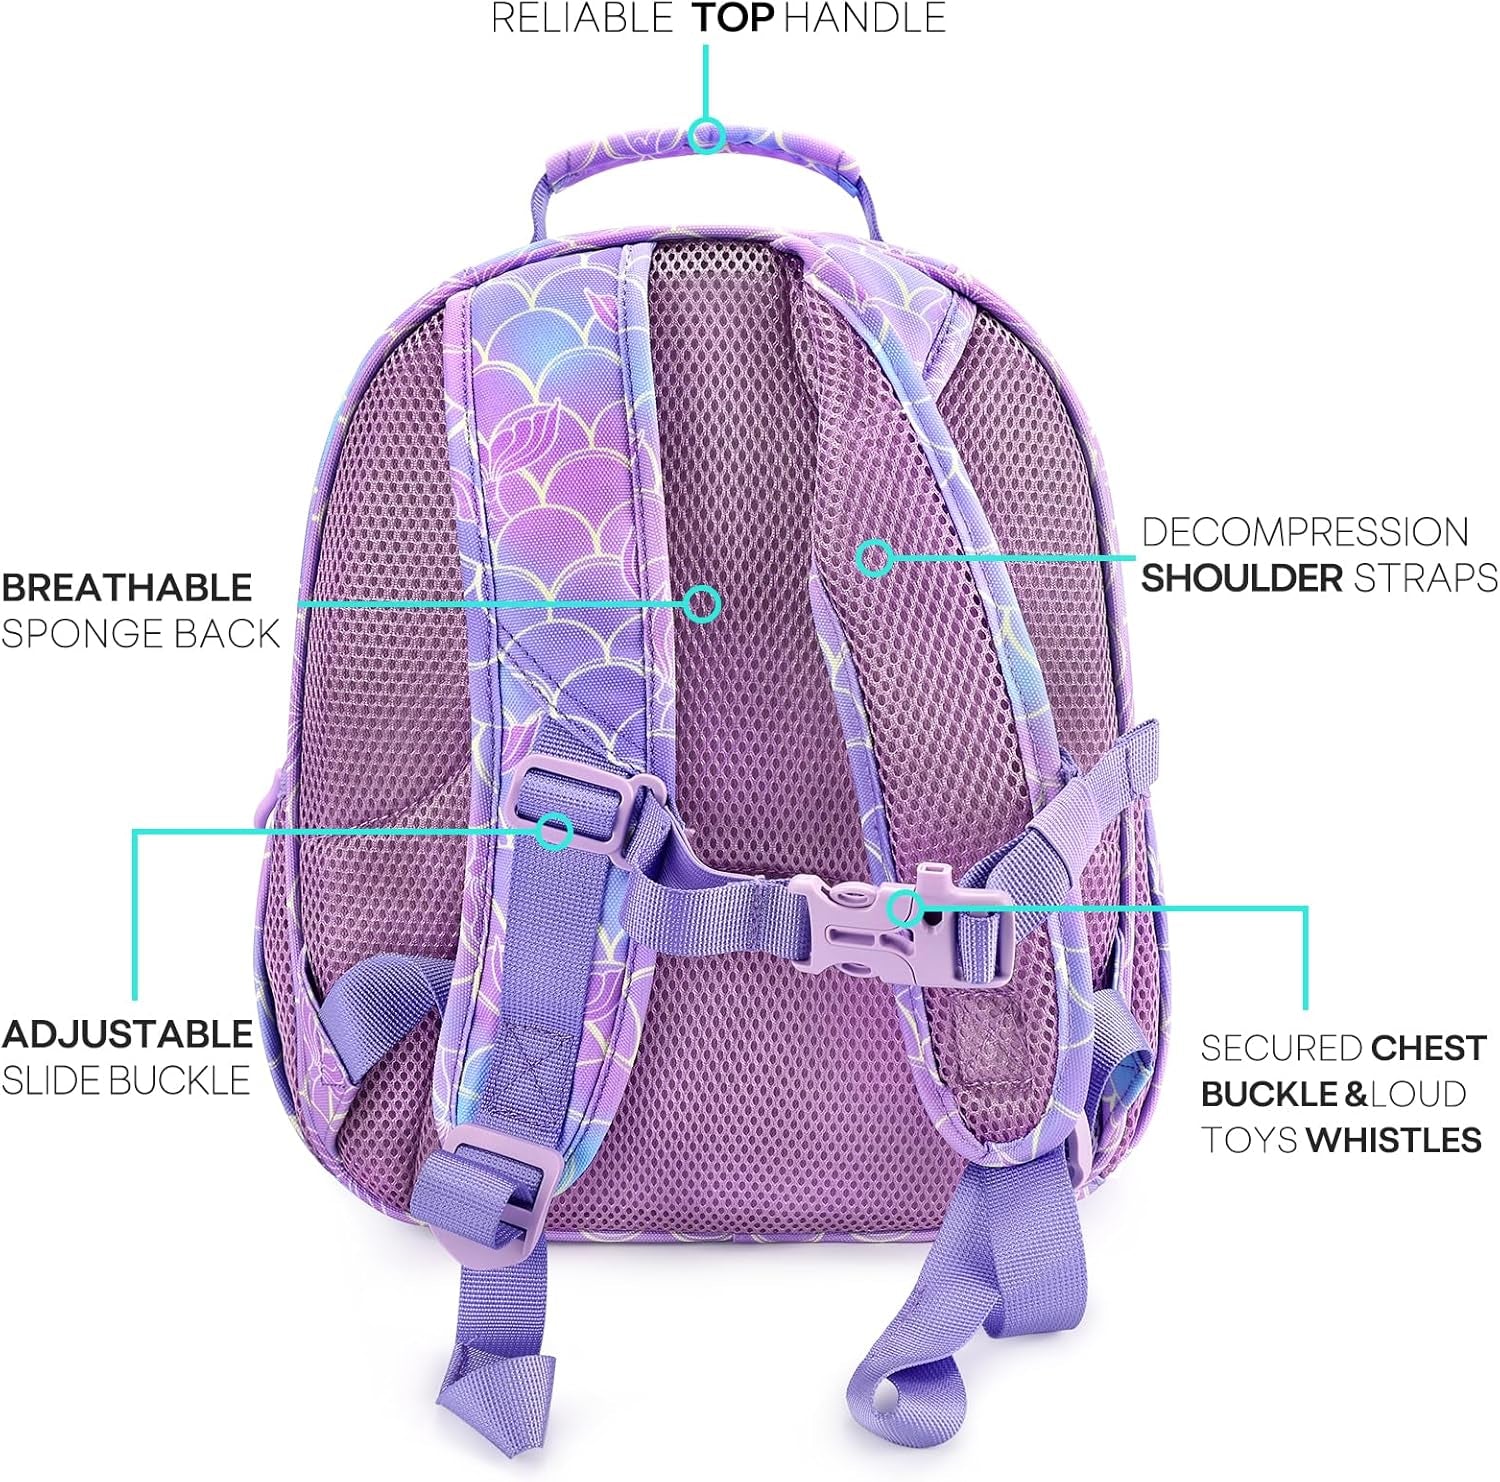 Toddler Backpack for Girls and Boys 2-4, Preschool Kindergarten Backpack, Cute Kids Backpacks for Girls（Dinosaur Forest Light Green）